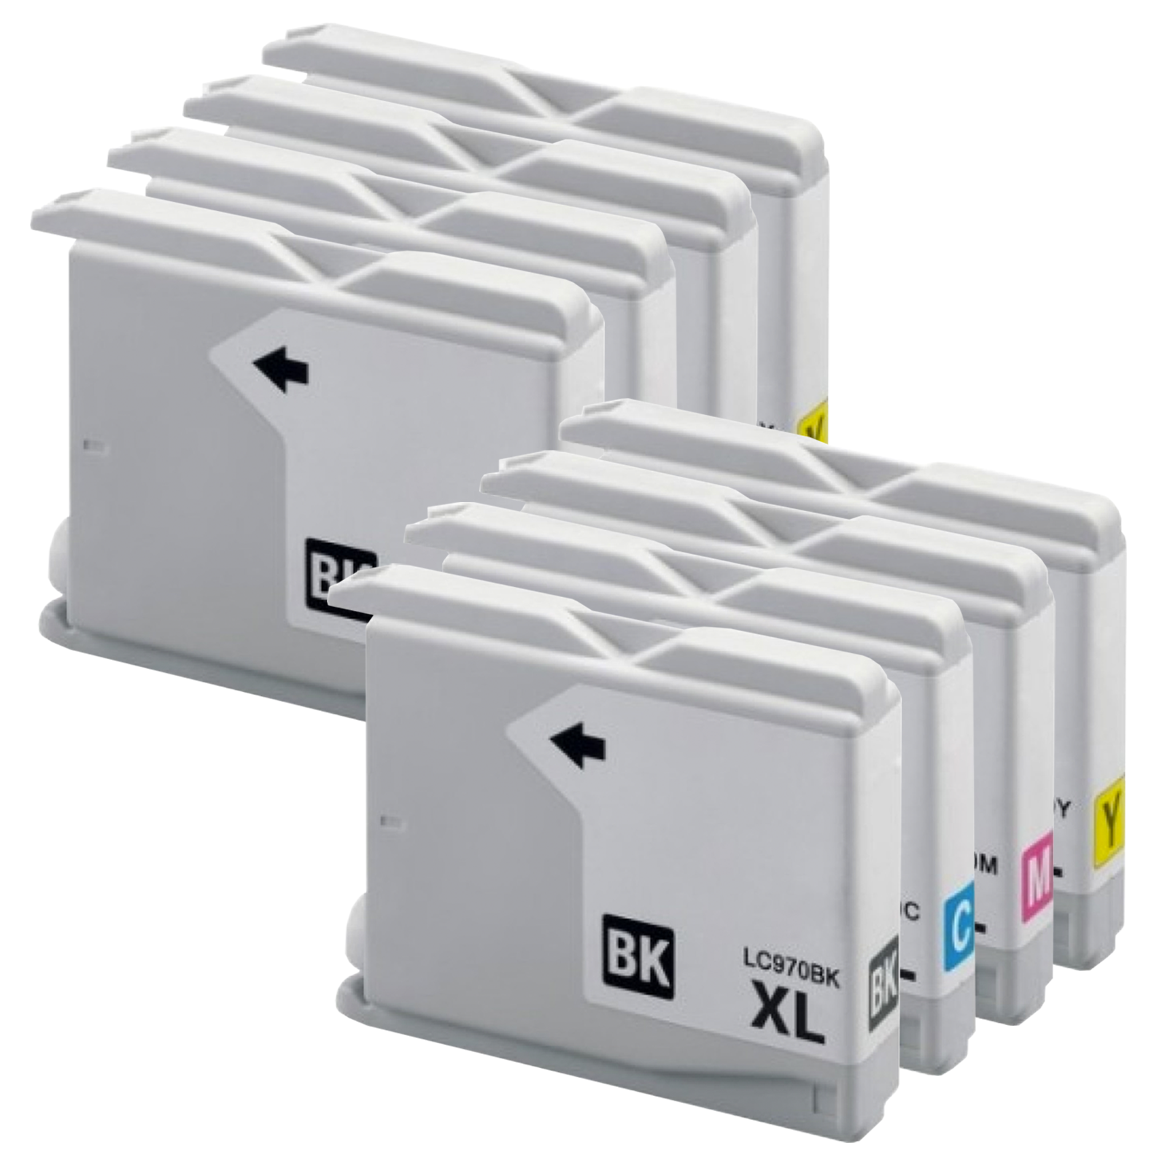 2x Huismerk Brother LC-970VALBP XL inktcartridges voordeelbundel